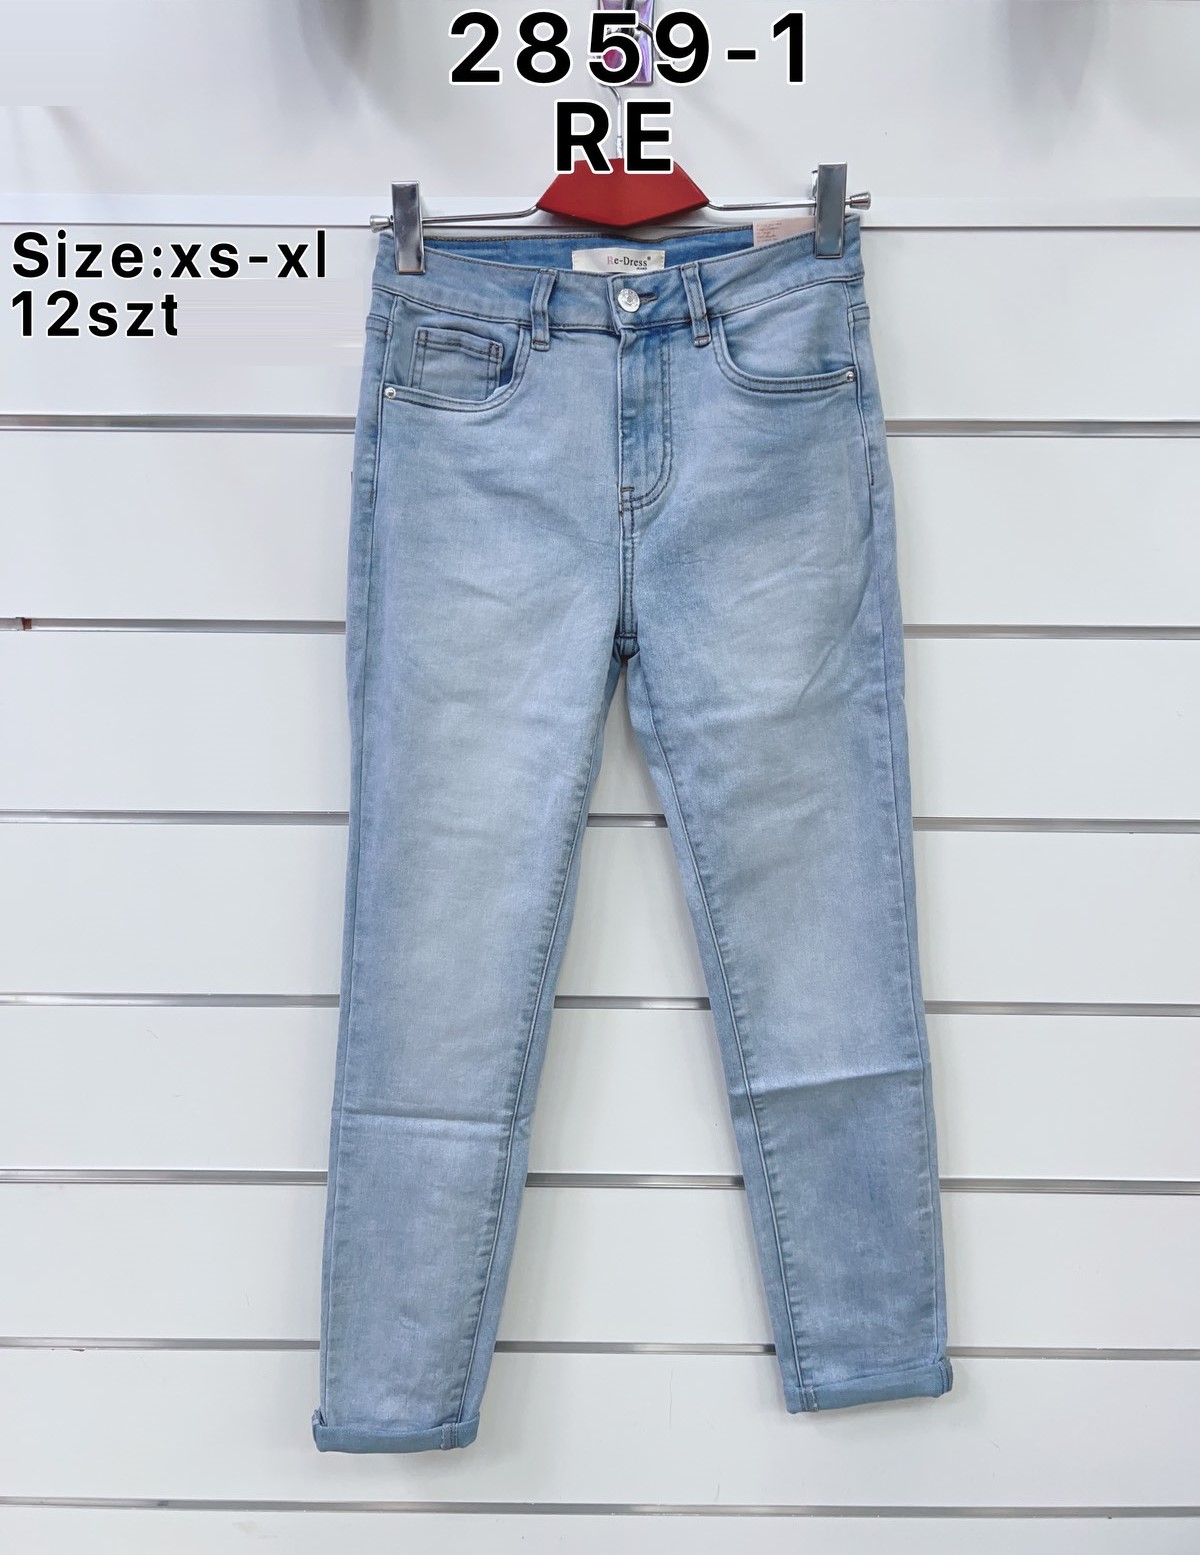 Spodnie  damskie jeans Roz  XS-XL  1 kolor . Paczka 12sz.t